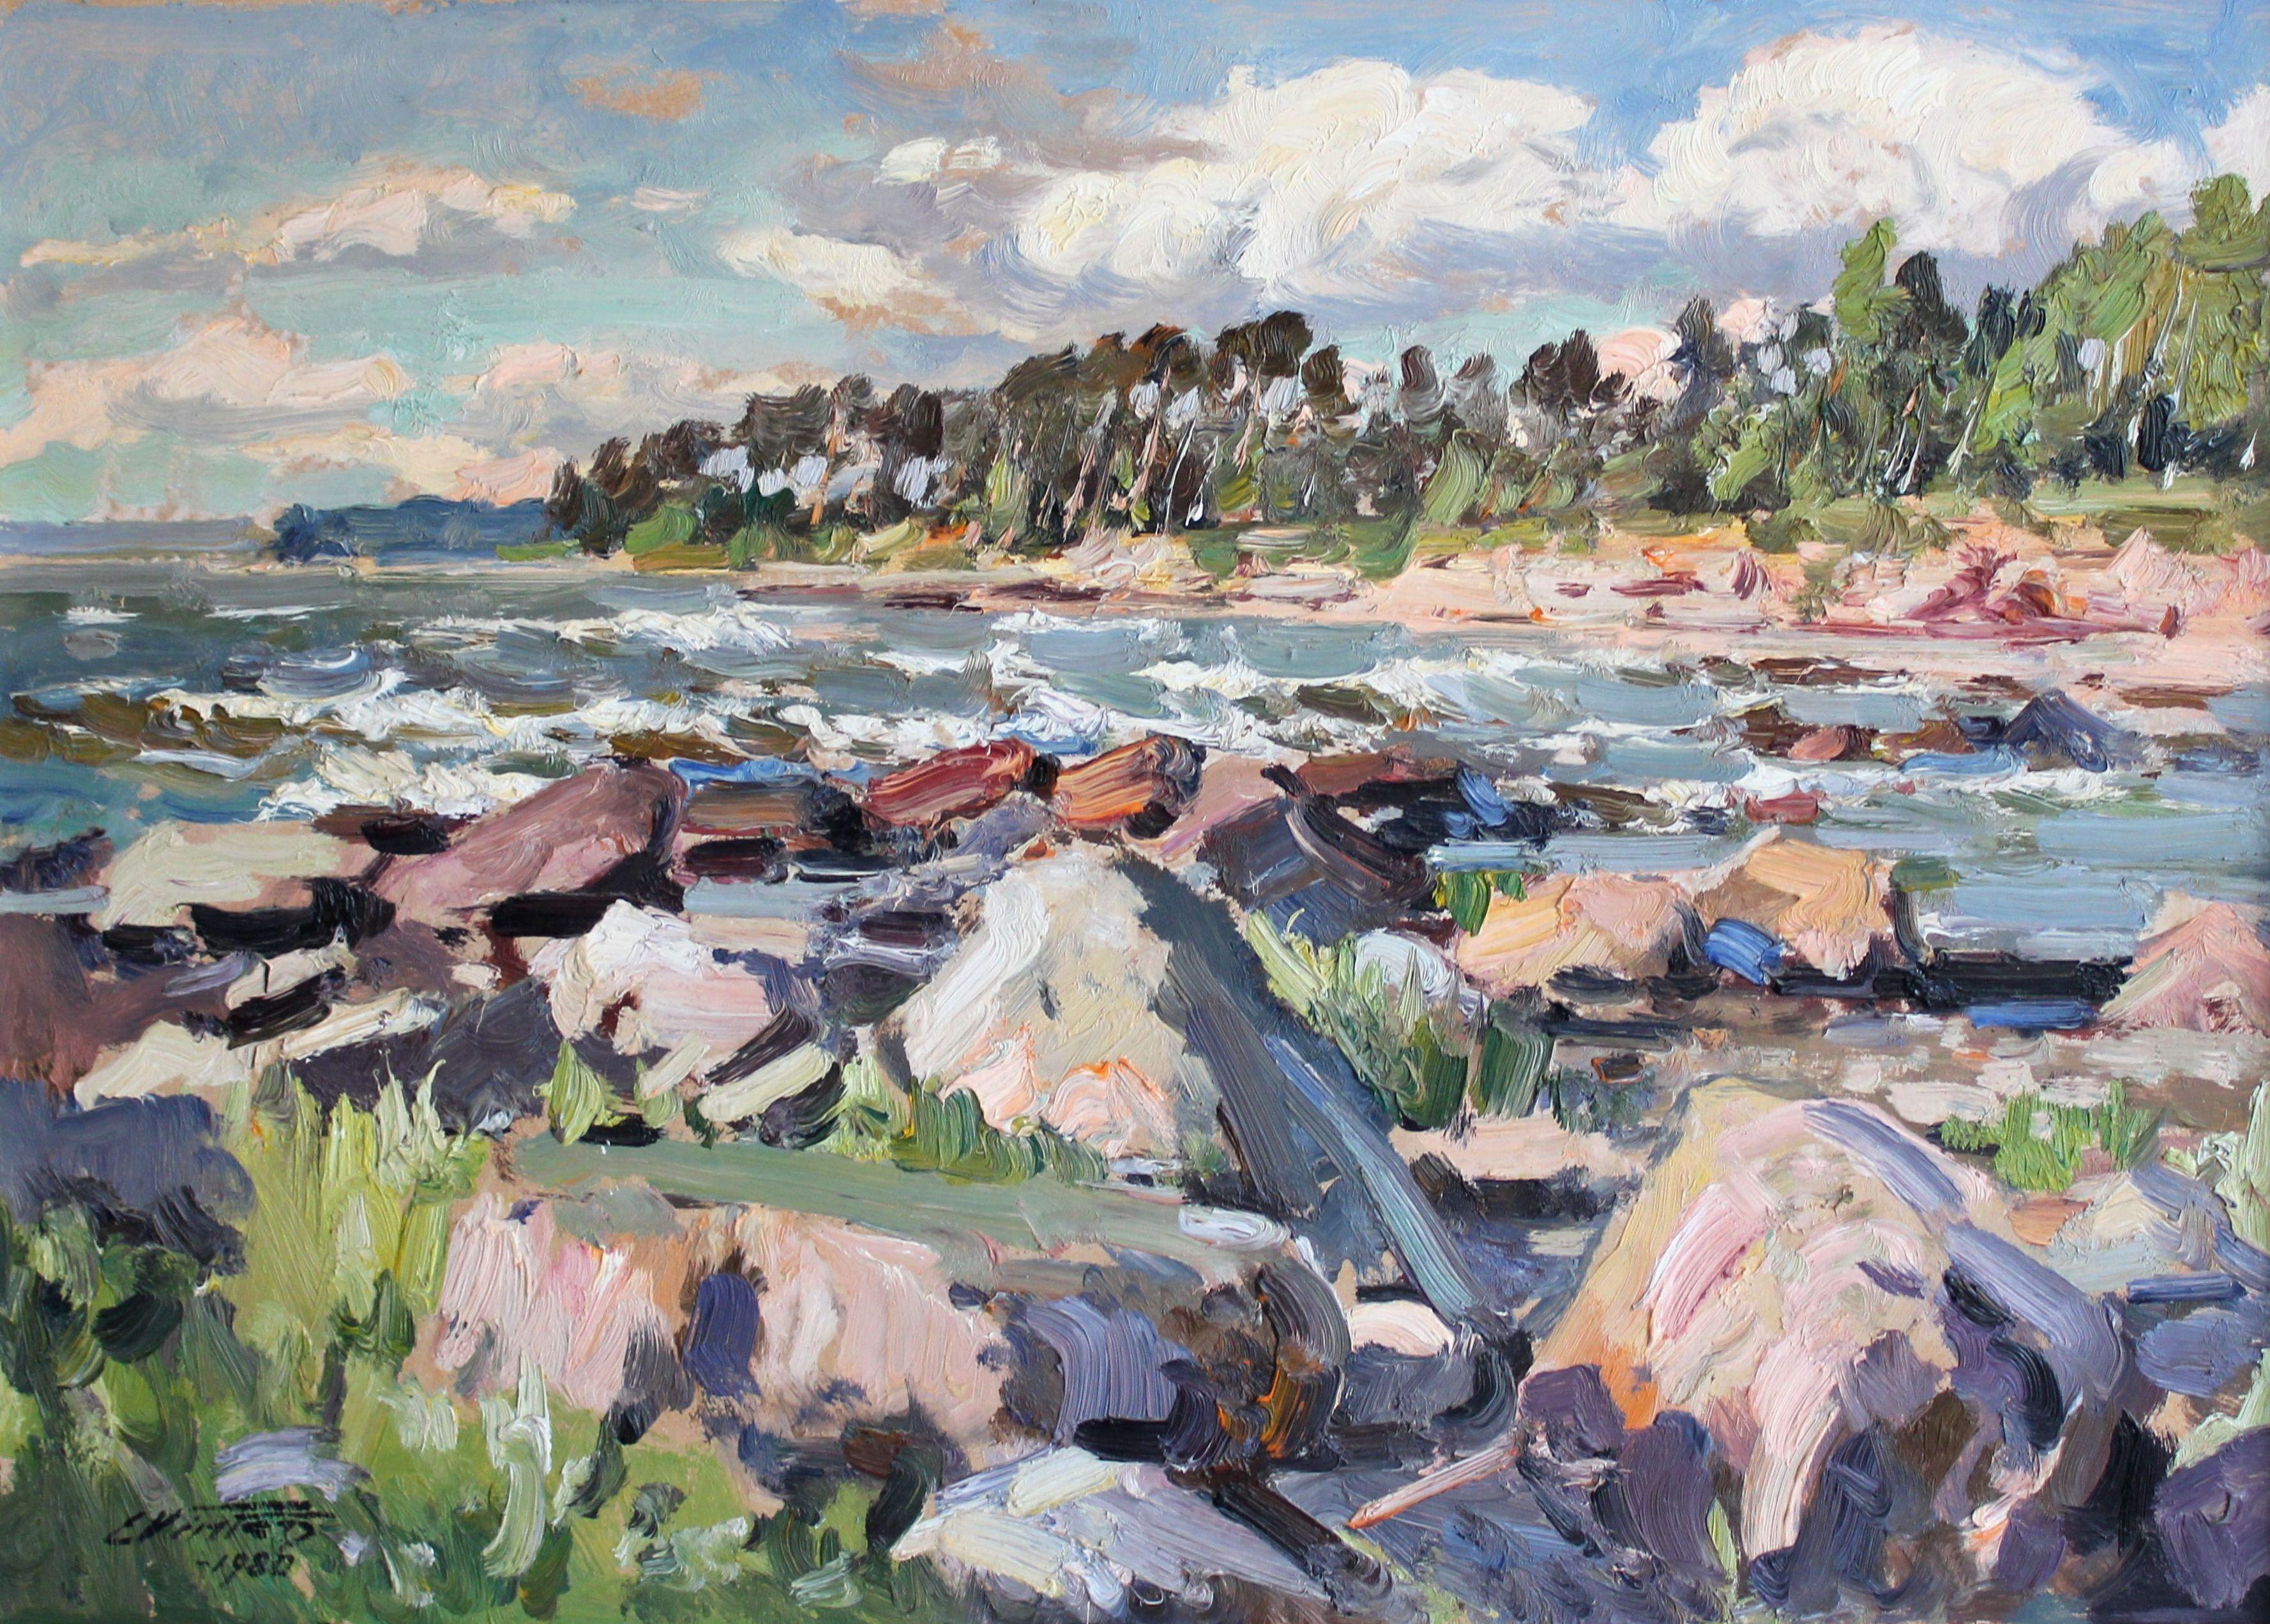 Rocky seashore. 1980, cardboard, oil, 48x66 cm - Painting by Edgars Vinters